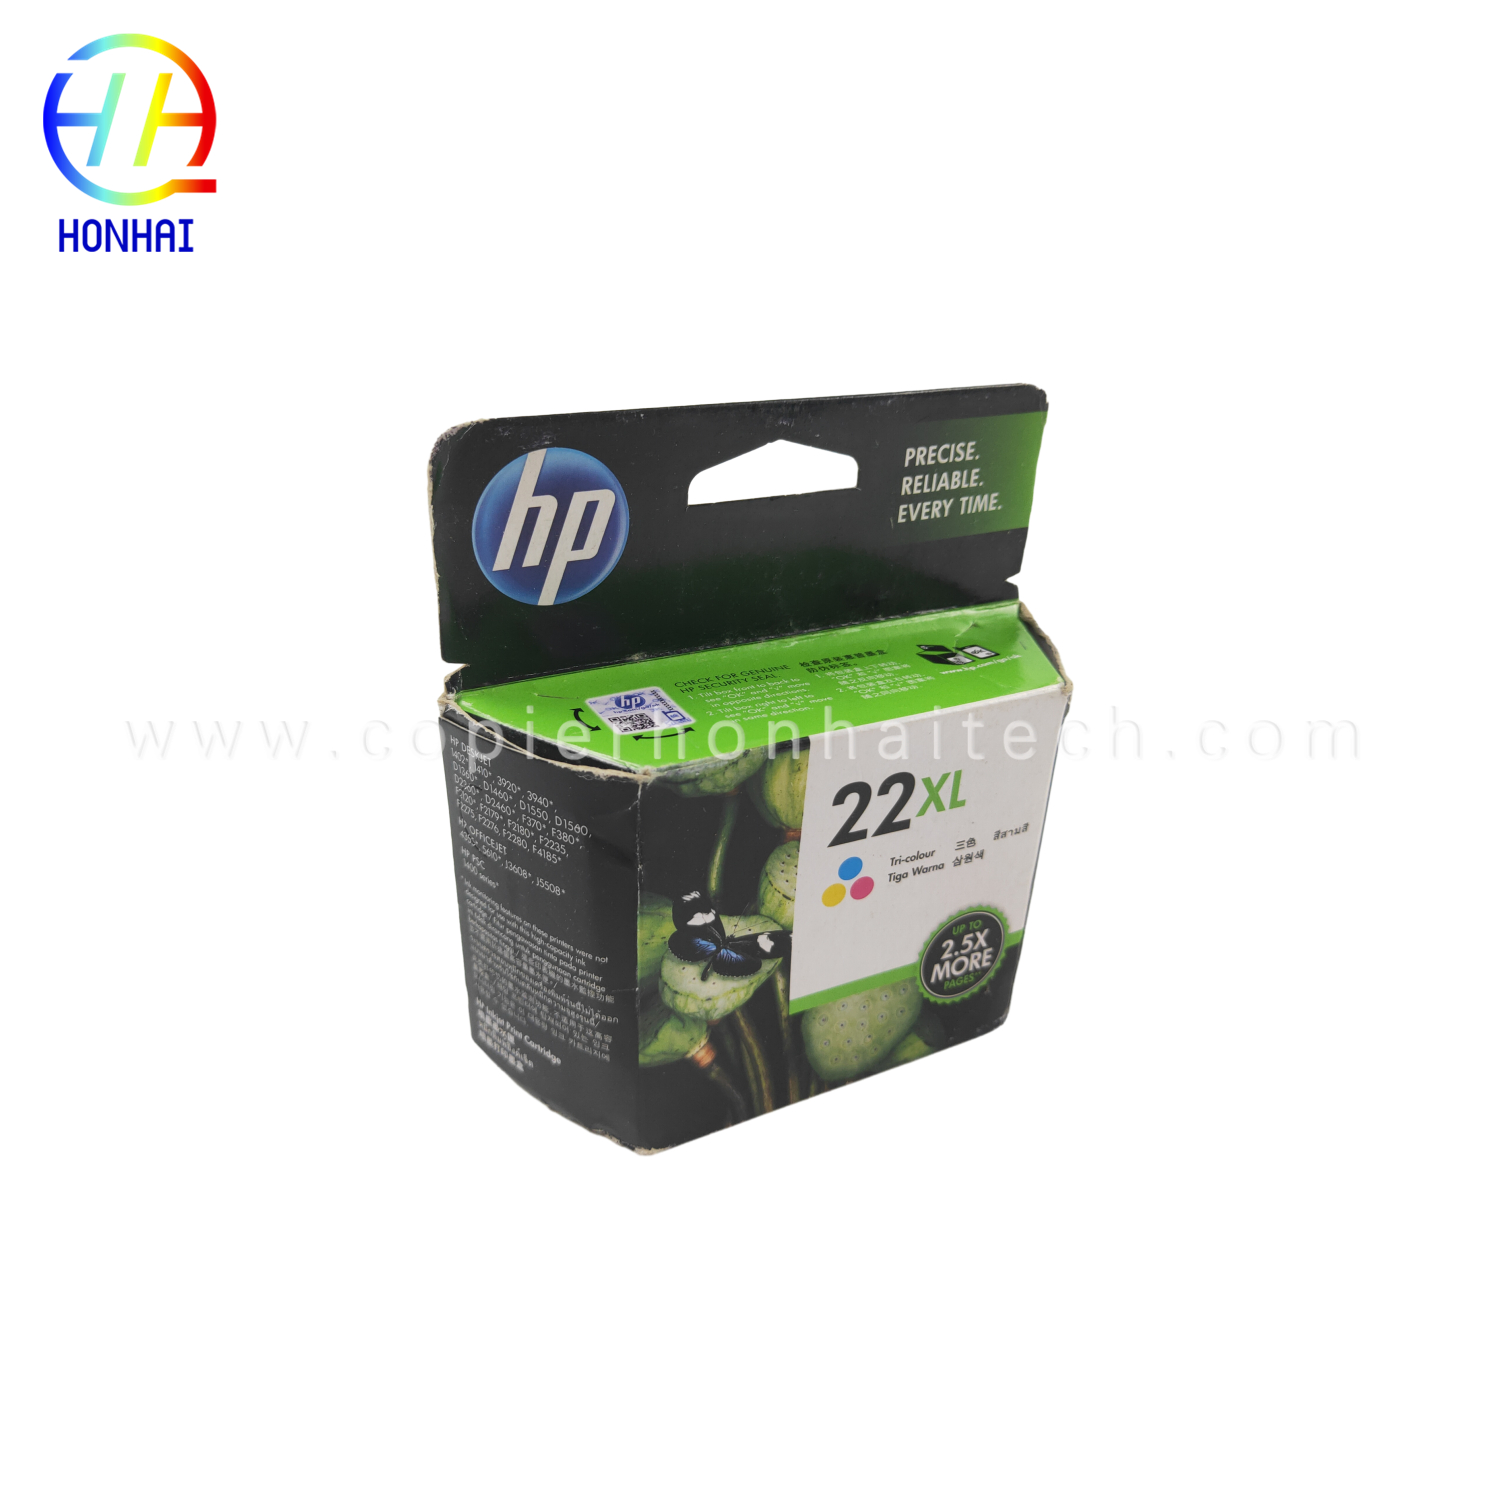 https://www.copierhonhaitech.com/ink-cartridge-for-hp-color-j3508-j3608-5508-3606-702-22-product/